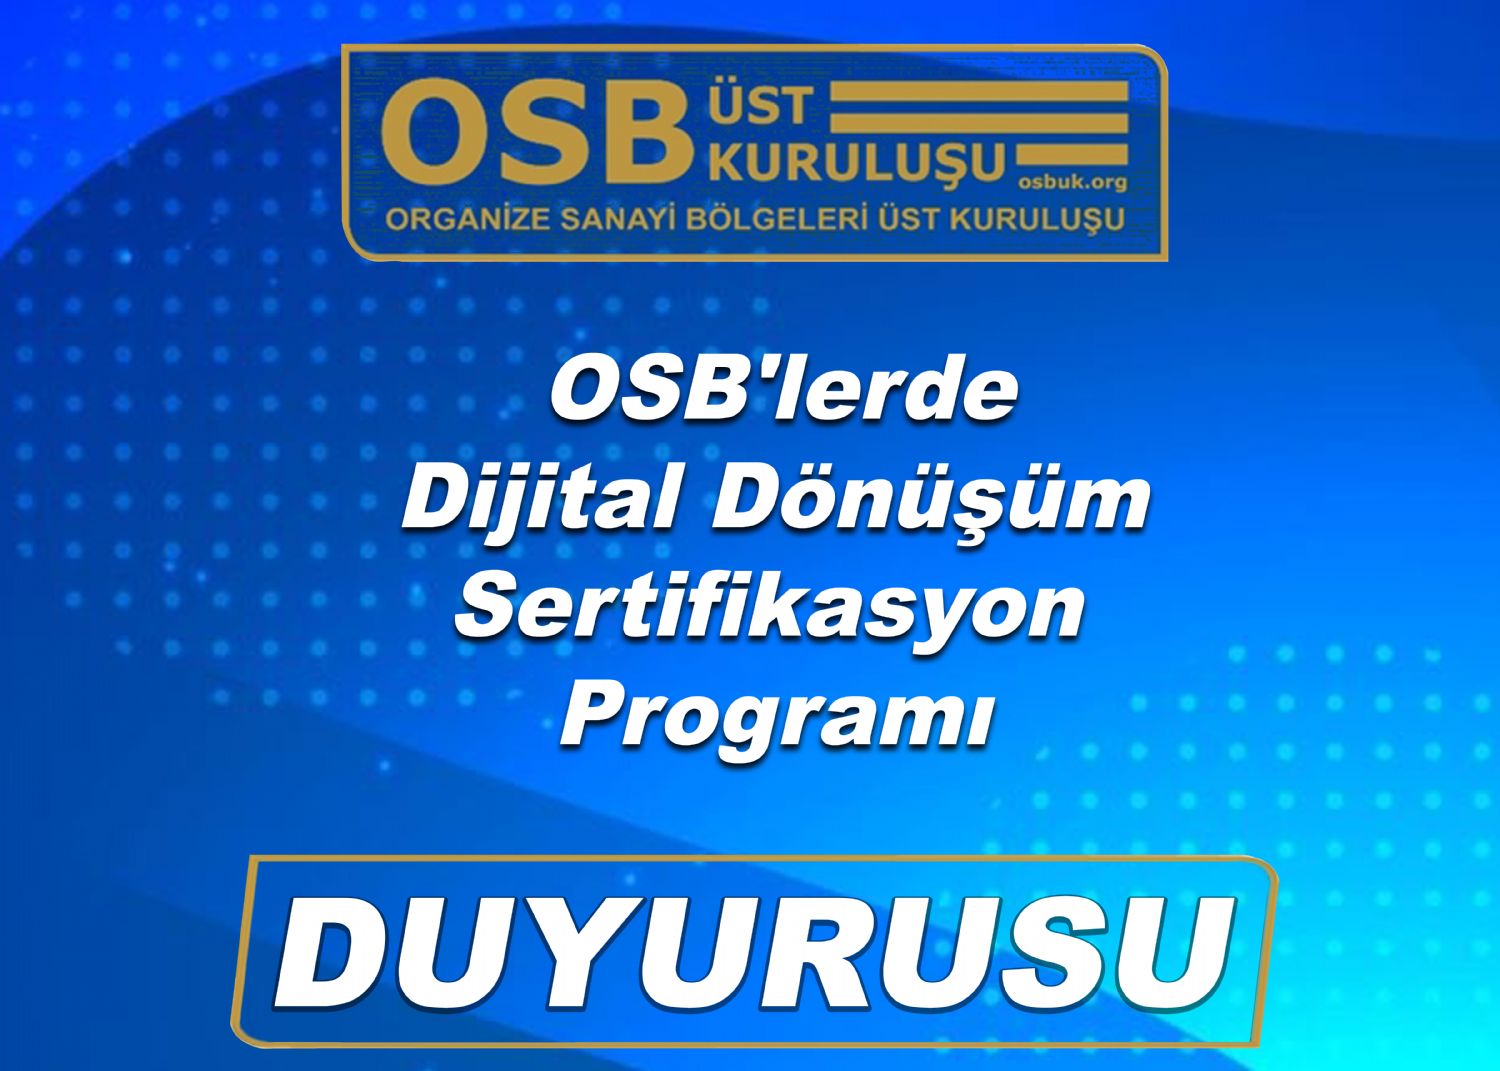 OSBÜK OSB'lerde Dijital Dönüşüm Sertifikasyon Programı Duyurusu